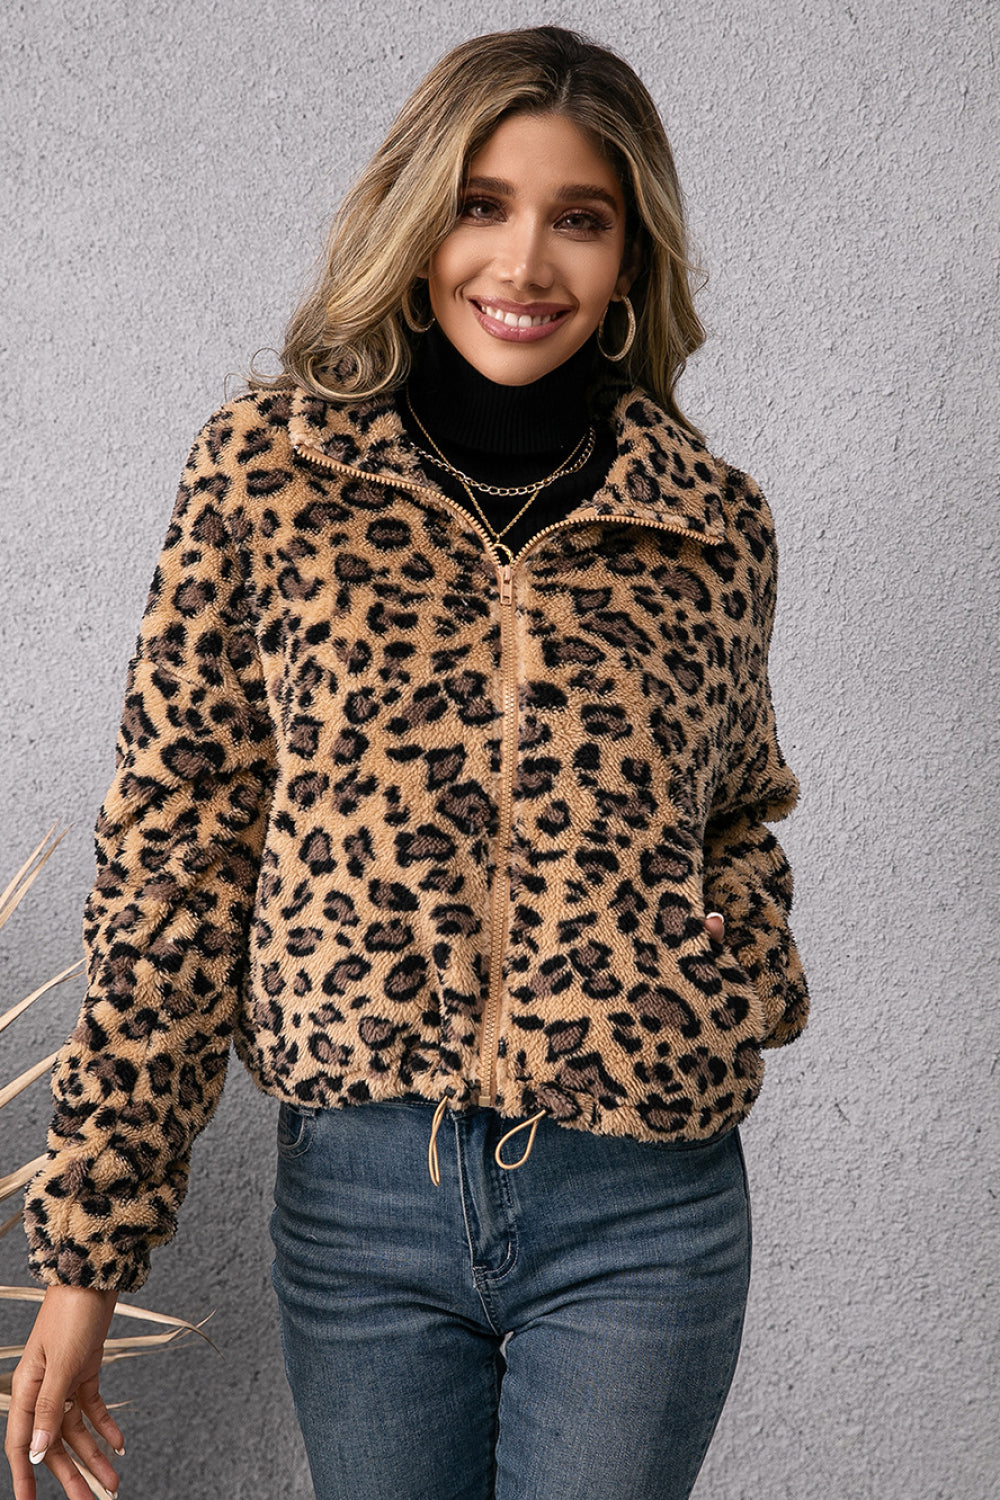 Leopard Zip Up Fleece Jacket with Pockets